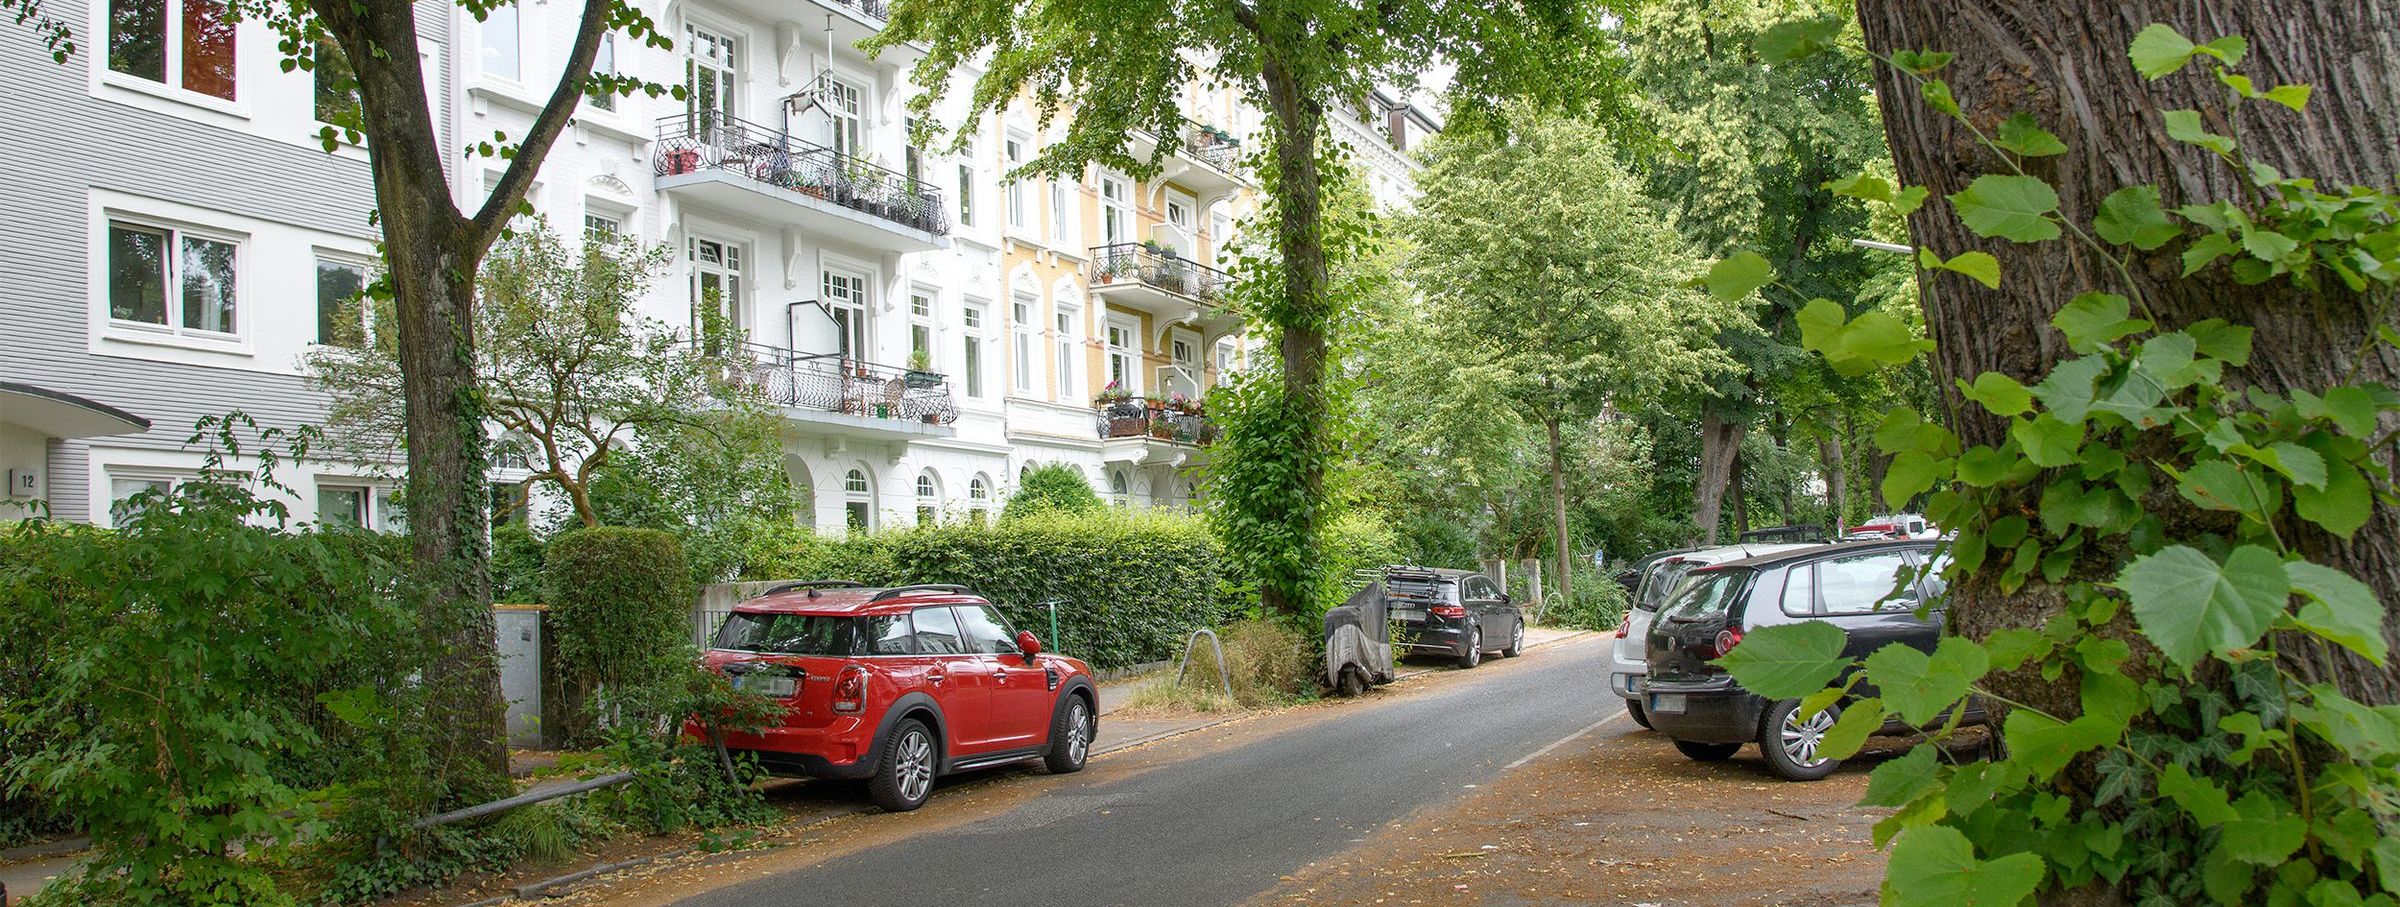 Straße mit parkenden Autos im städtischen Wohngebiet